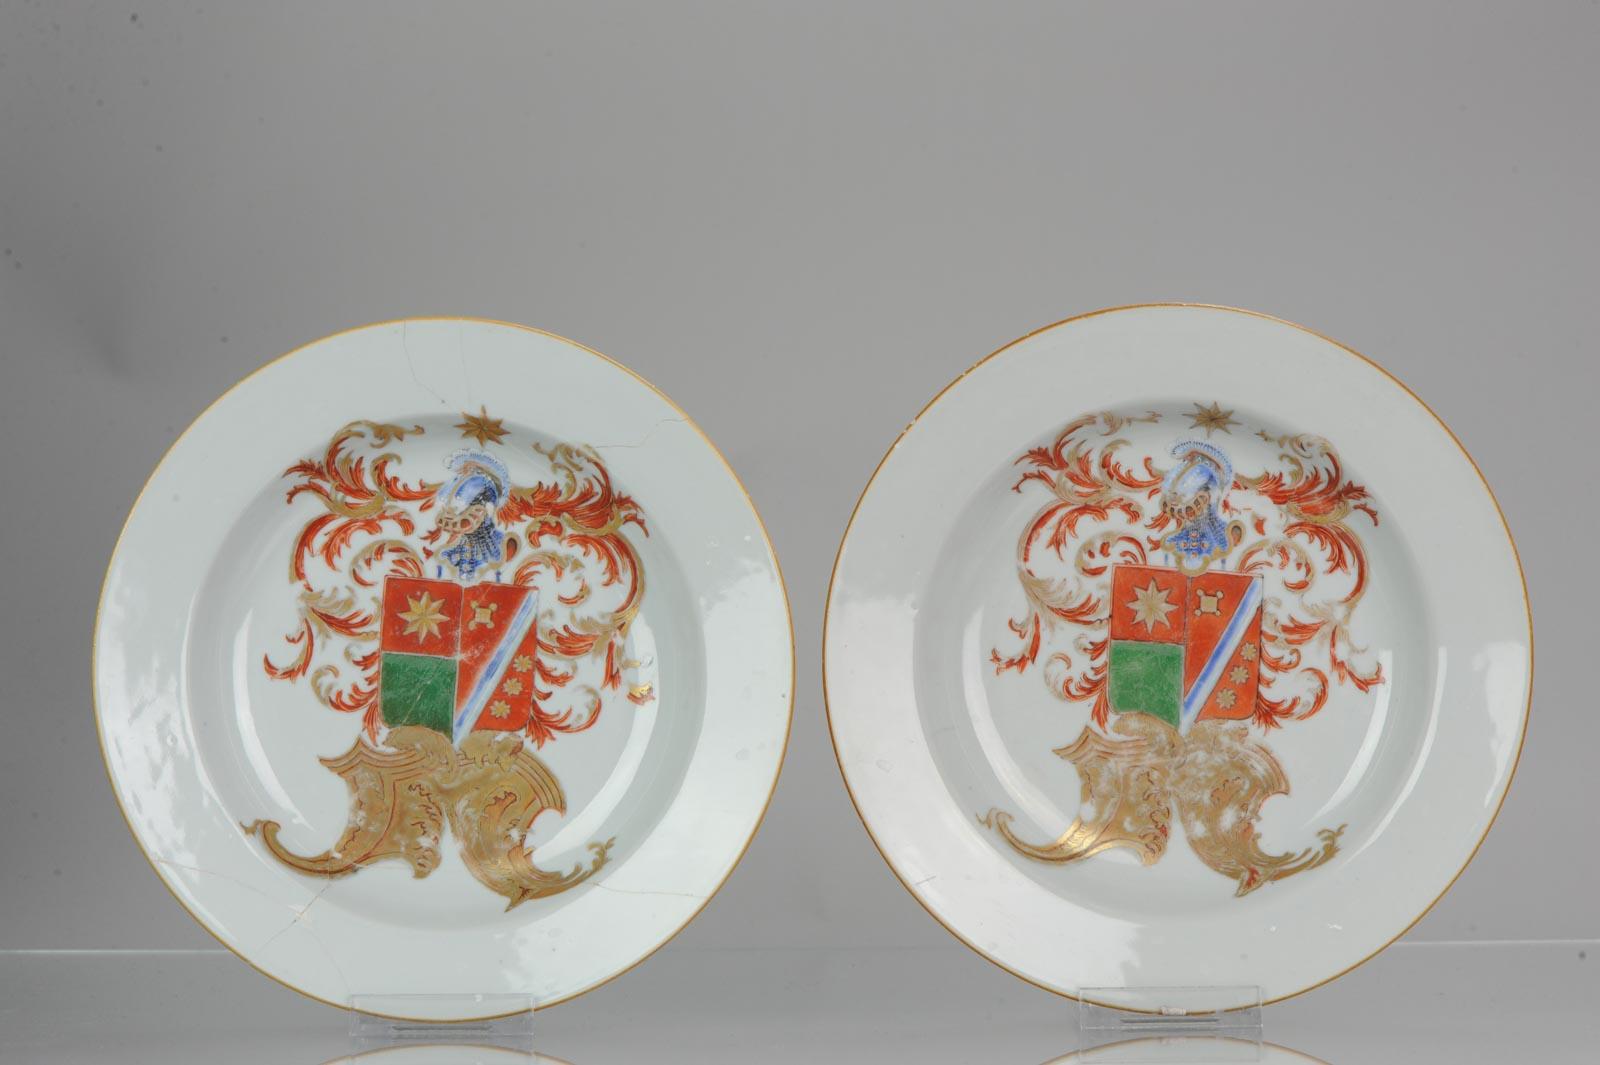 Antique Plate Armorial Fencai Porcelain Famille Rose China Qianlong, '1736-1795' 7